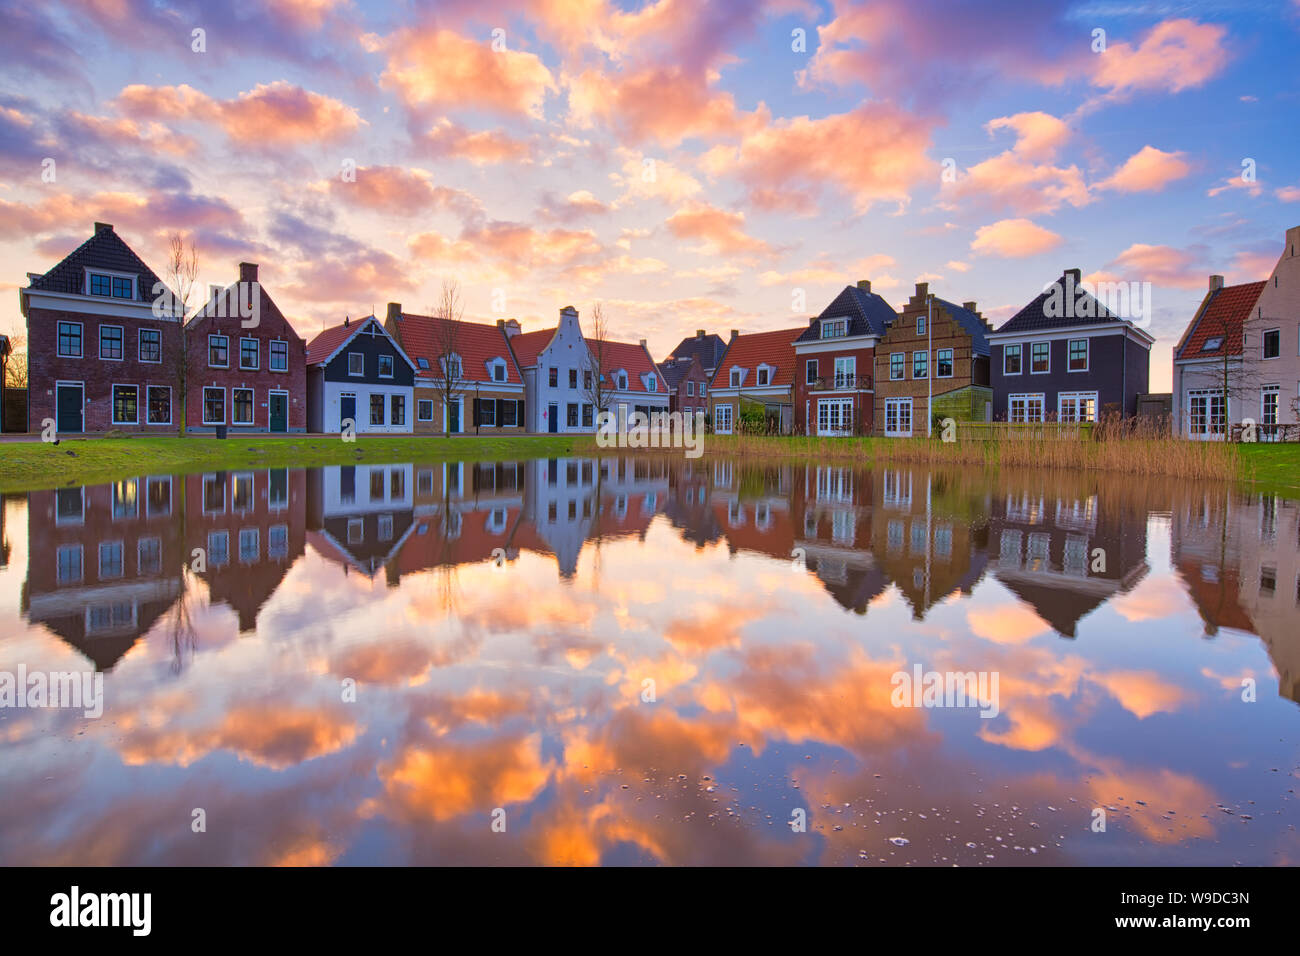 Case olandesi tradizionali con un canale e un bellissimo tramonto con riflessi nell'acqua - Travel immagine - Paesi Bassi - immagine di viaggio Foto Stock